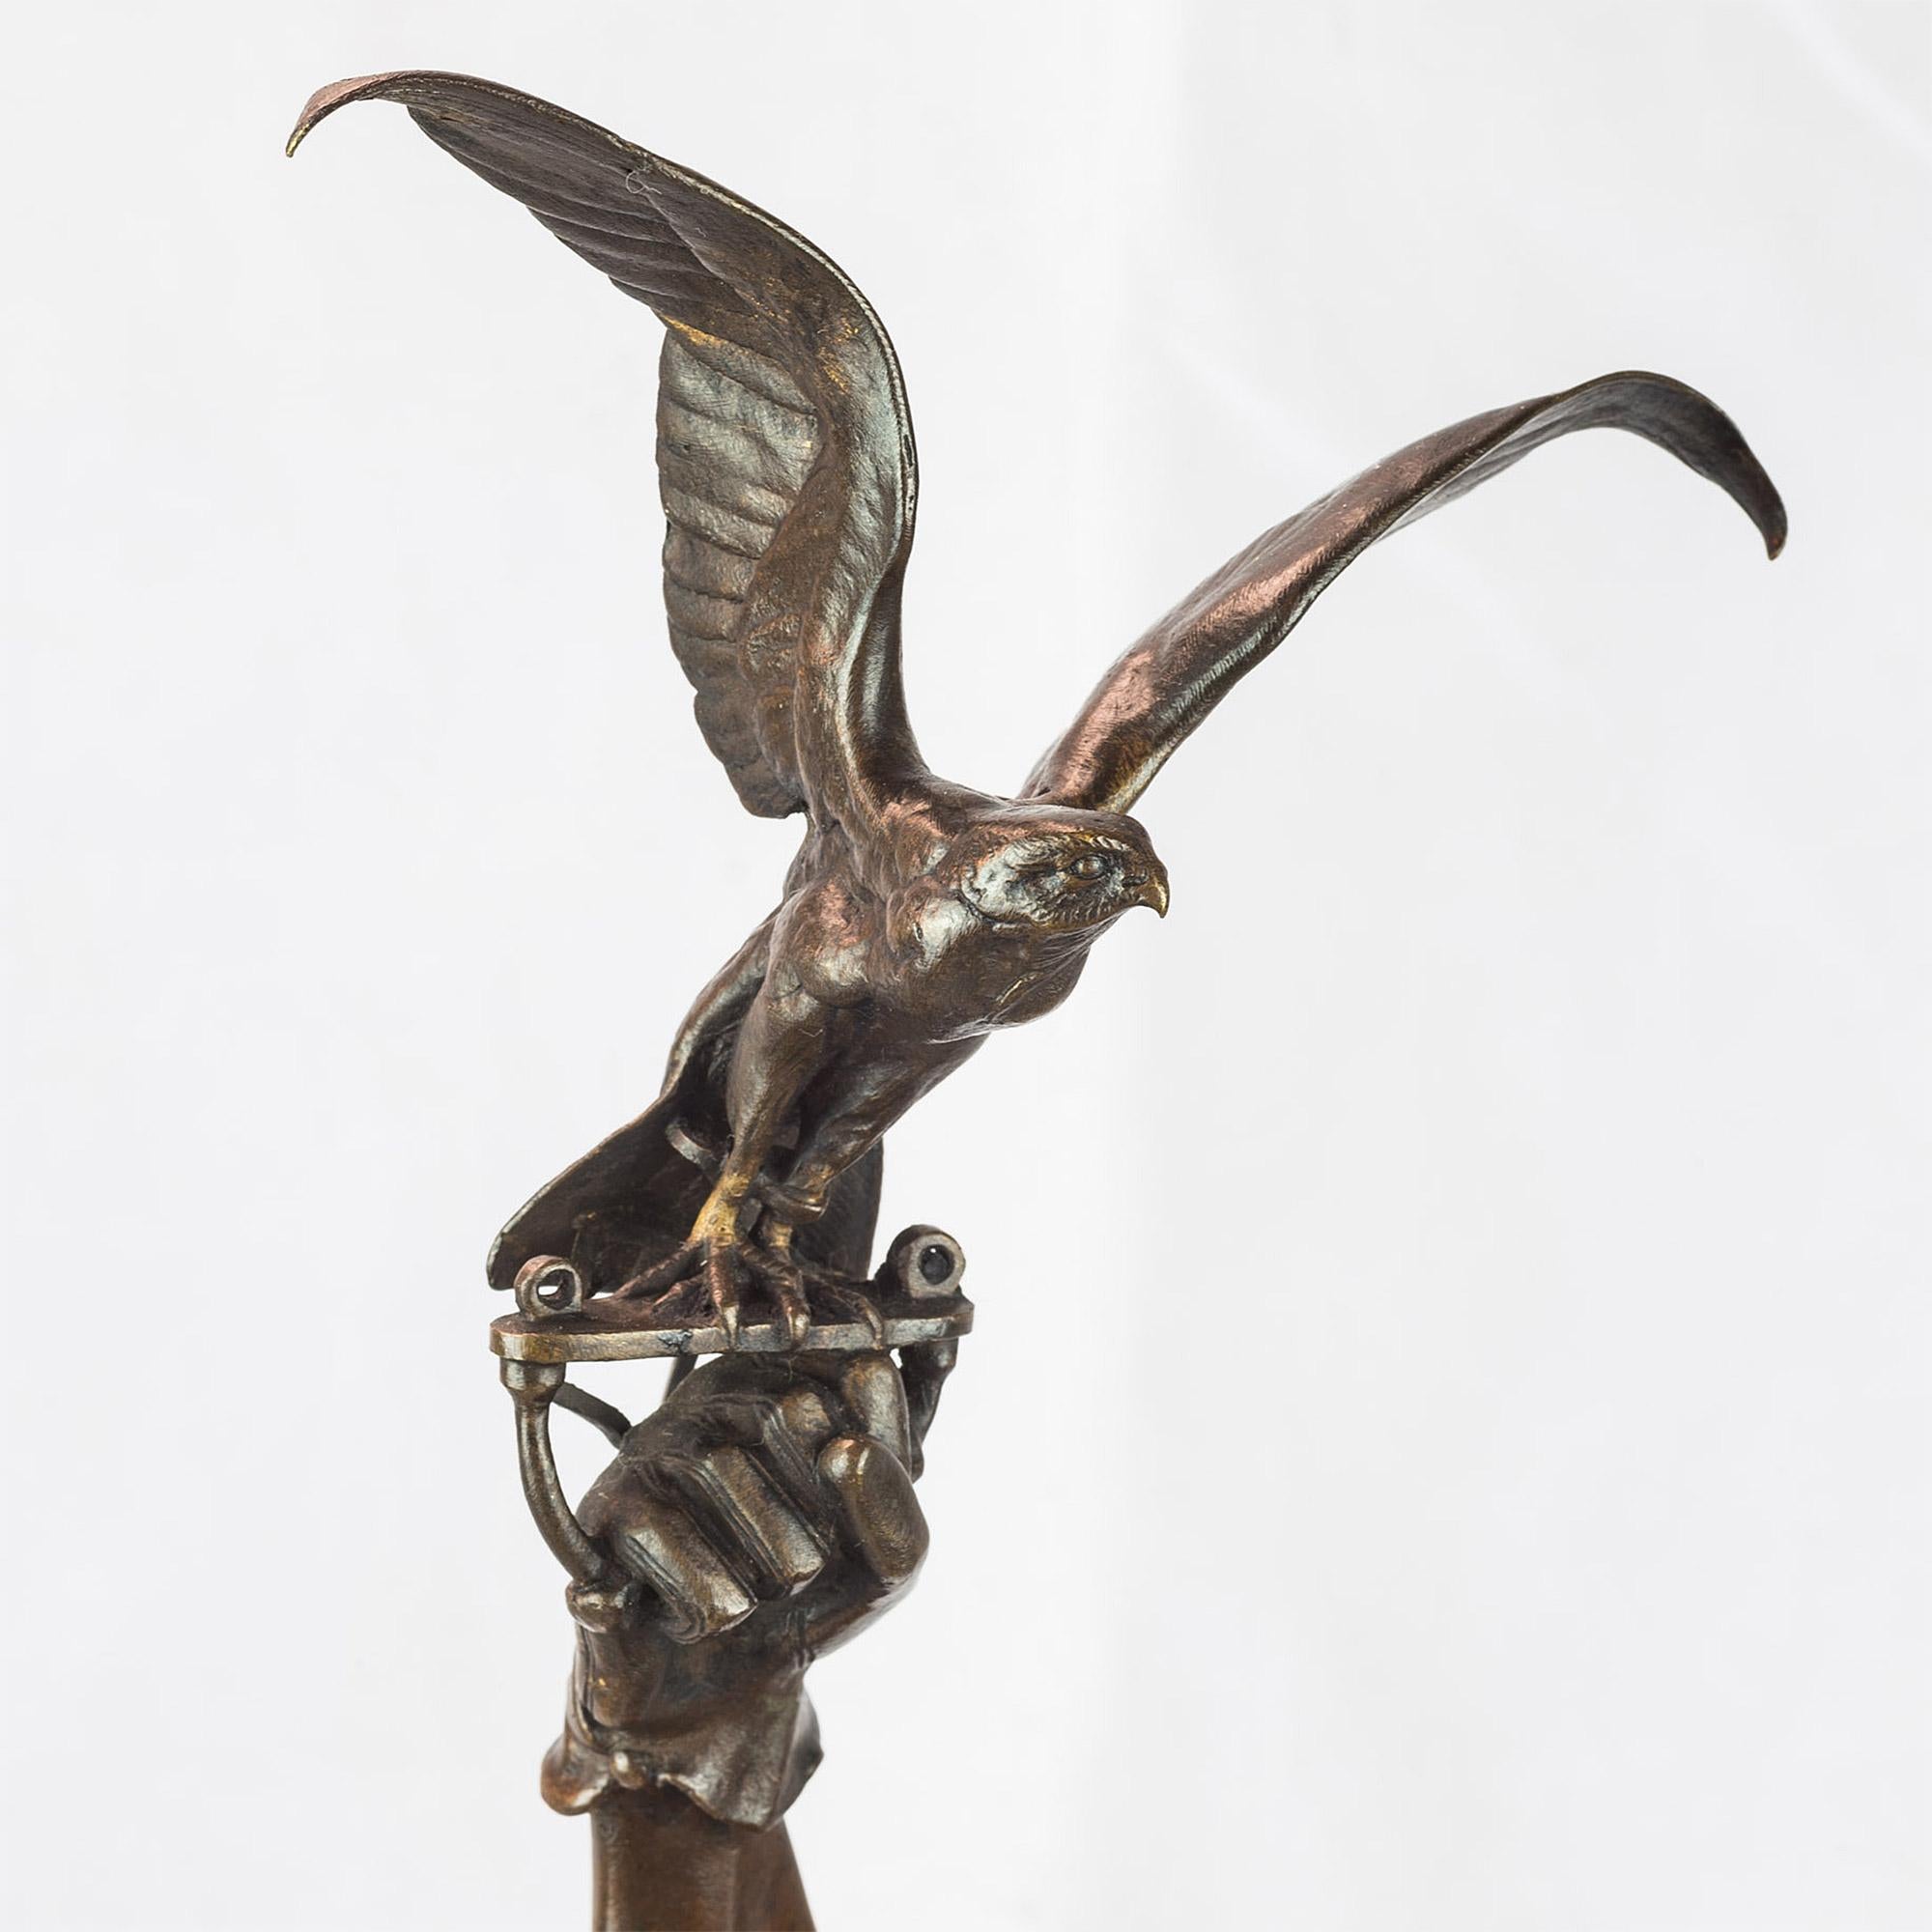 PIERRE JULES MÊNE 
Français, (1810-1877)

Un berbère et son faucon   
    
Bronze patiné, signé 